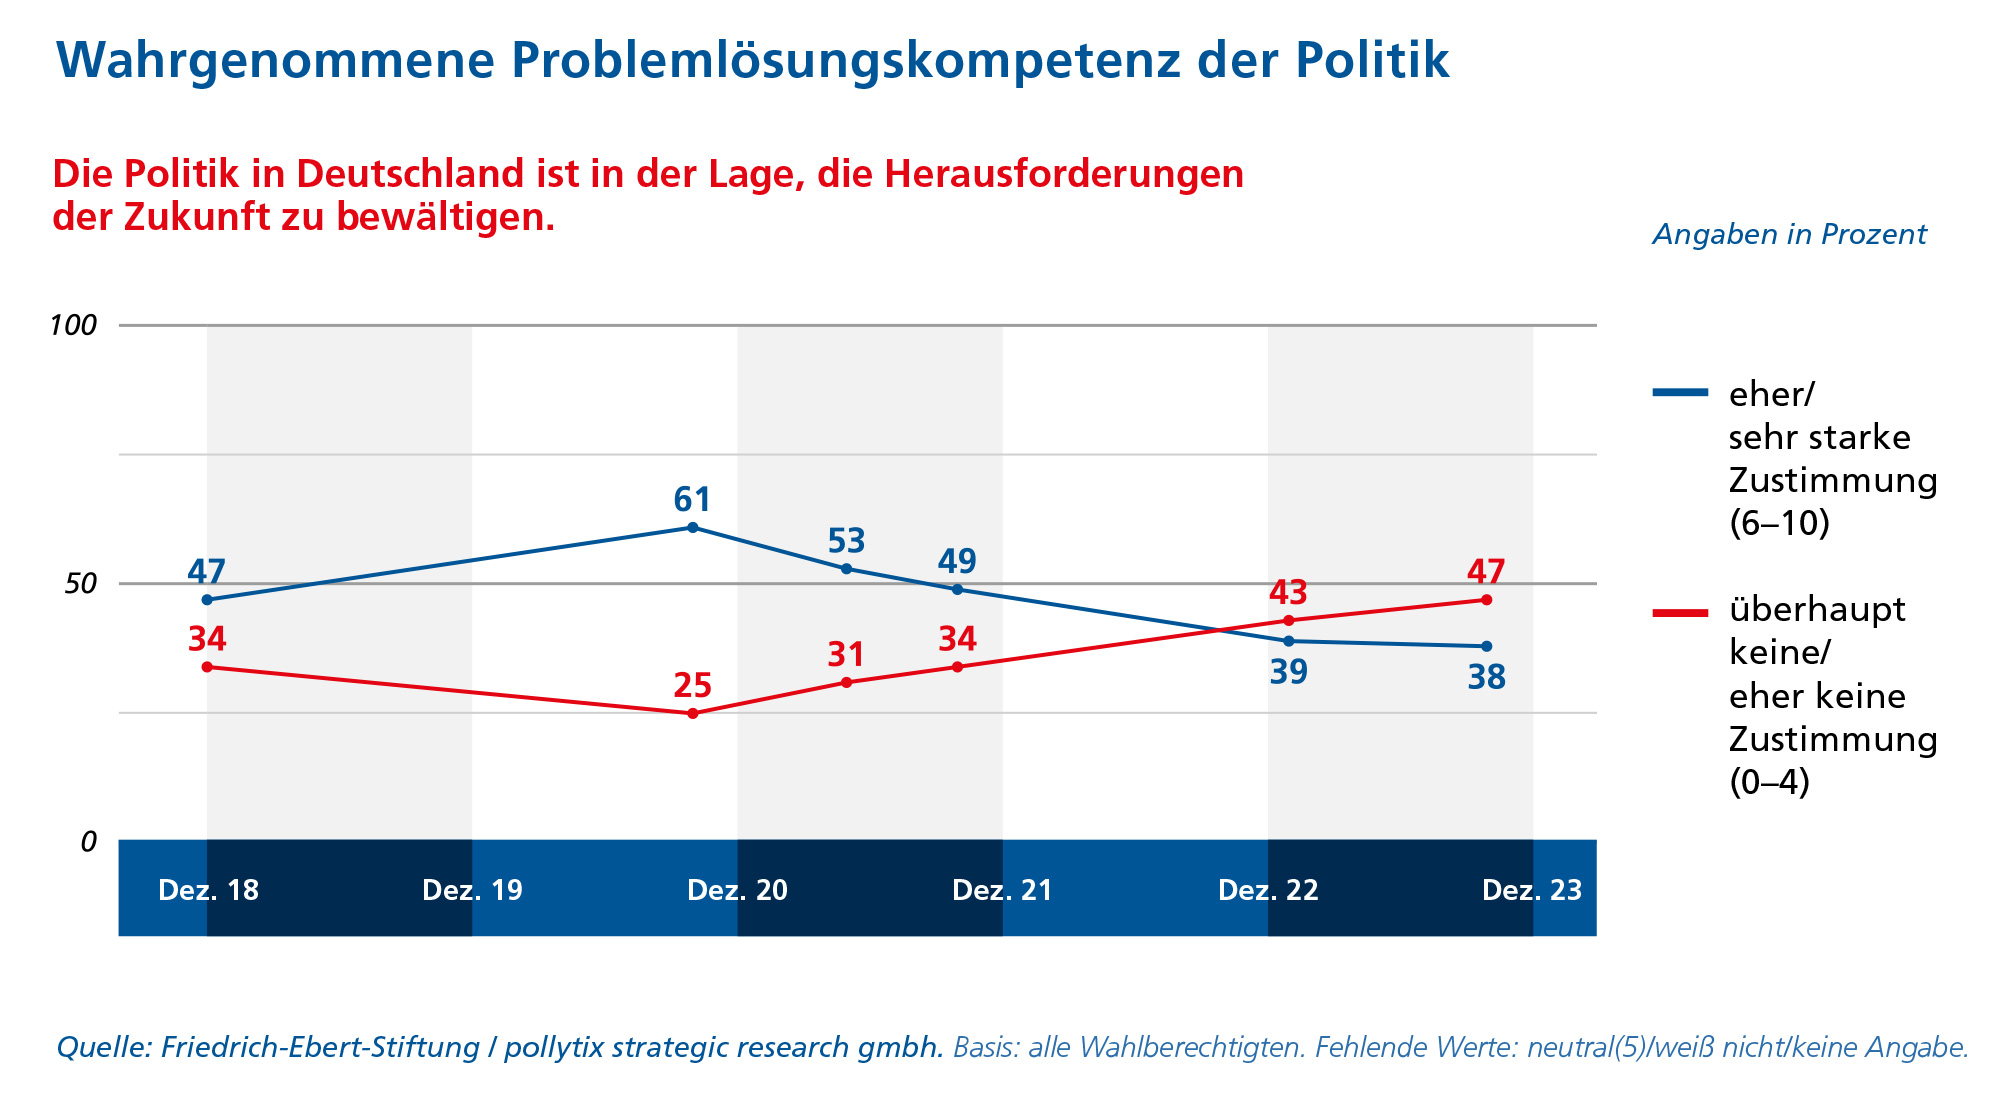 Ergebnisse auf die Frage, ob der Politik in Deutschland Problemlösungskompetenz für die Herausforderungen der Zukunft zugeschrieben wird, von Dezember 2018 bis Dezember 2023. Seit Ende 2022 überwiegt die Einstellung, dass keine/eher keine Kompetenzen zugeschrieben werden.